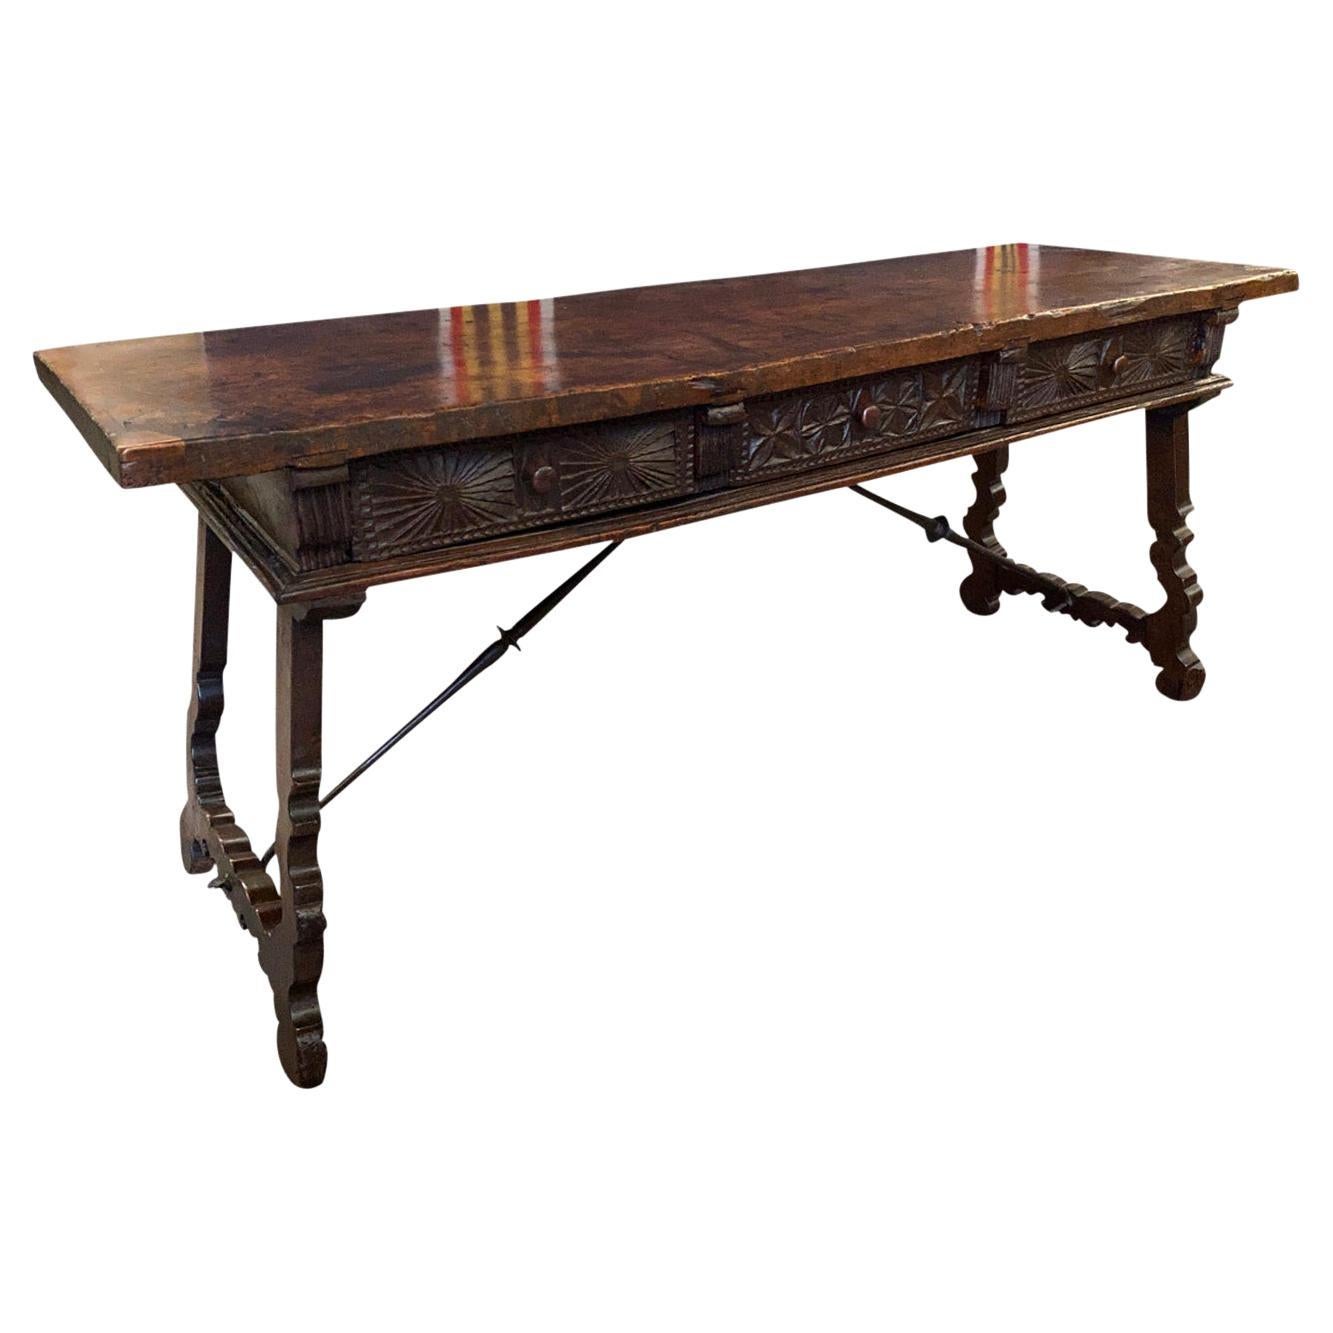 Table à réflecteur espagnole du 17e siècle